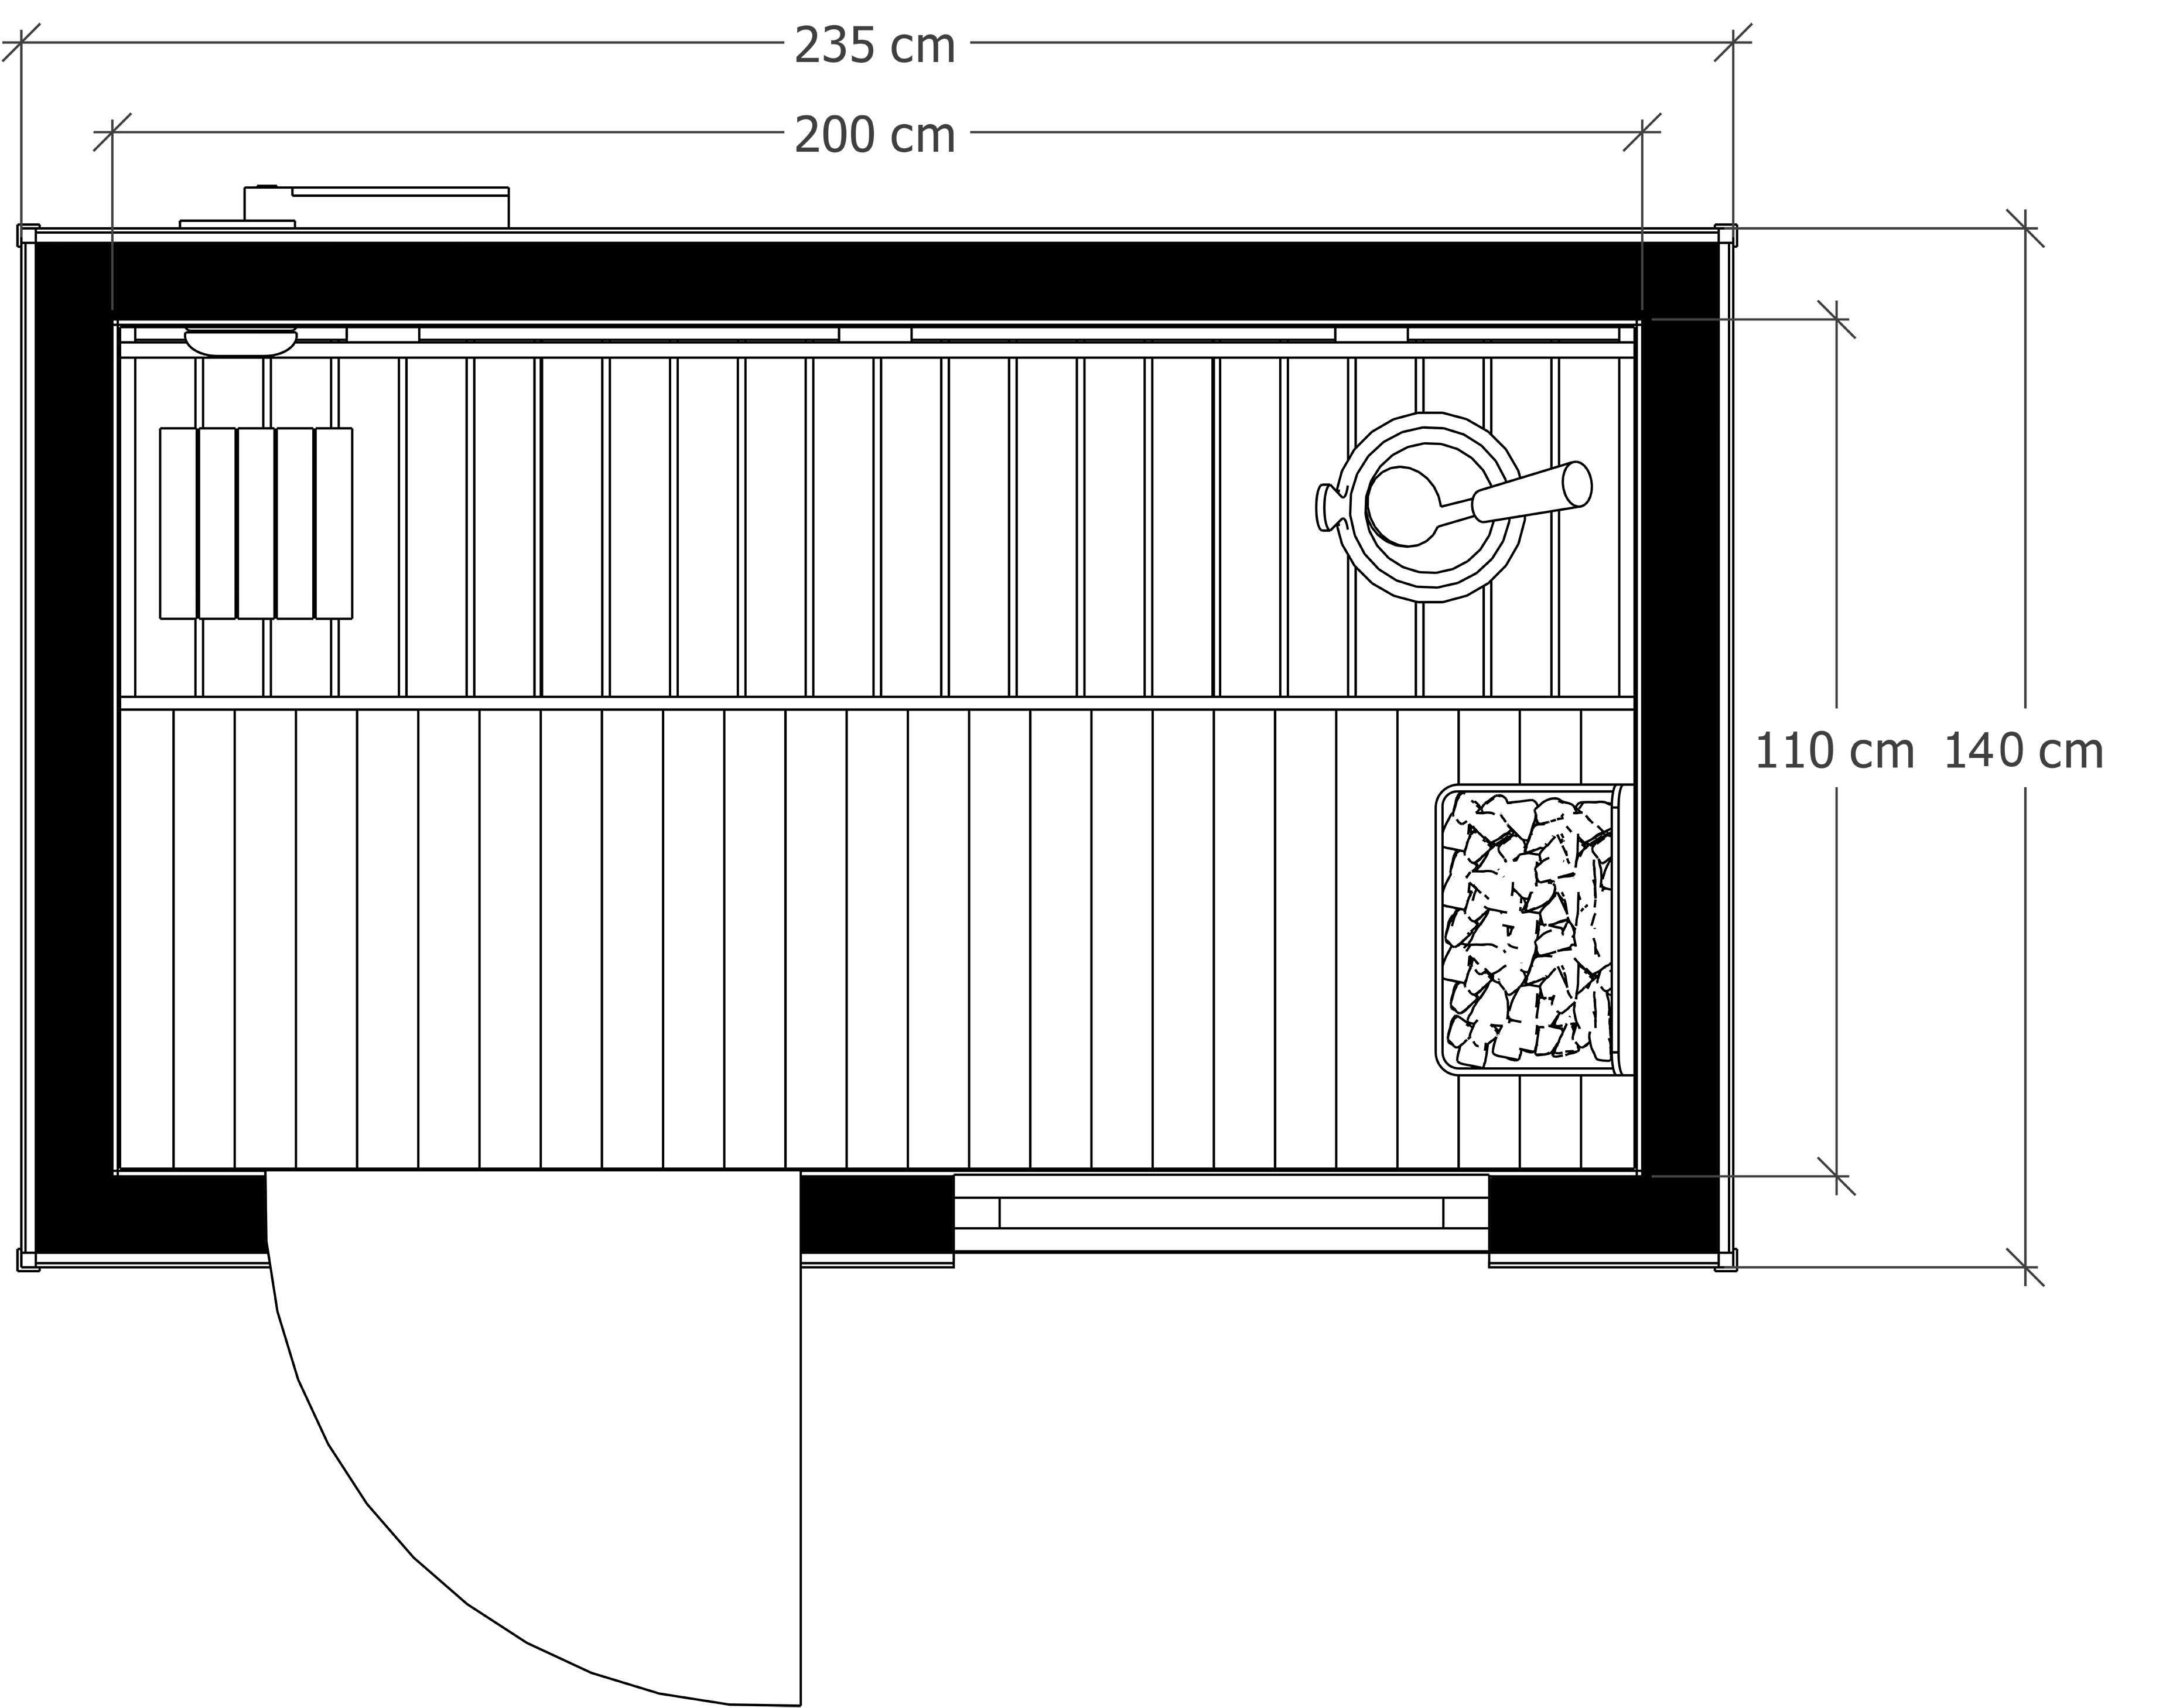 Sauna ogrodowa Mia 235 cm x 140 cm